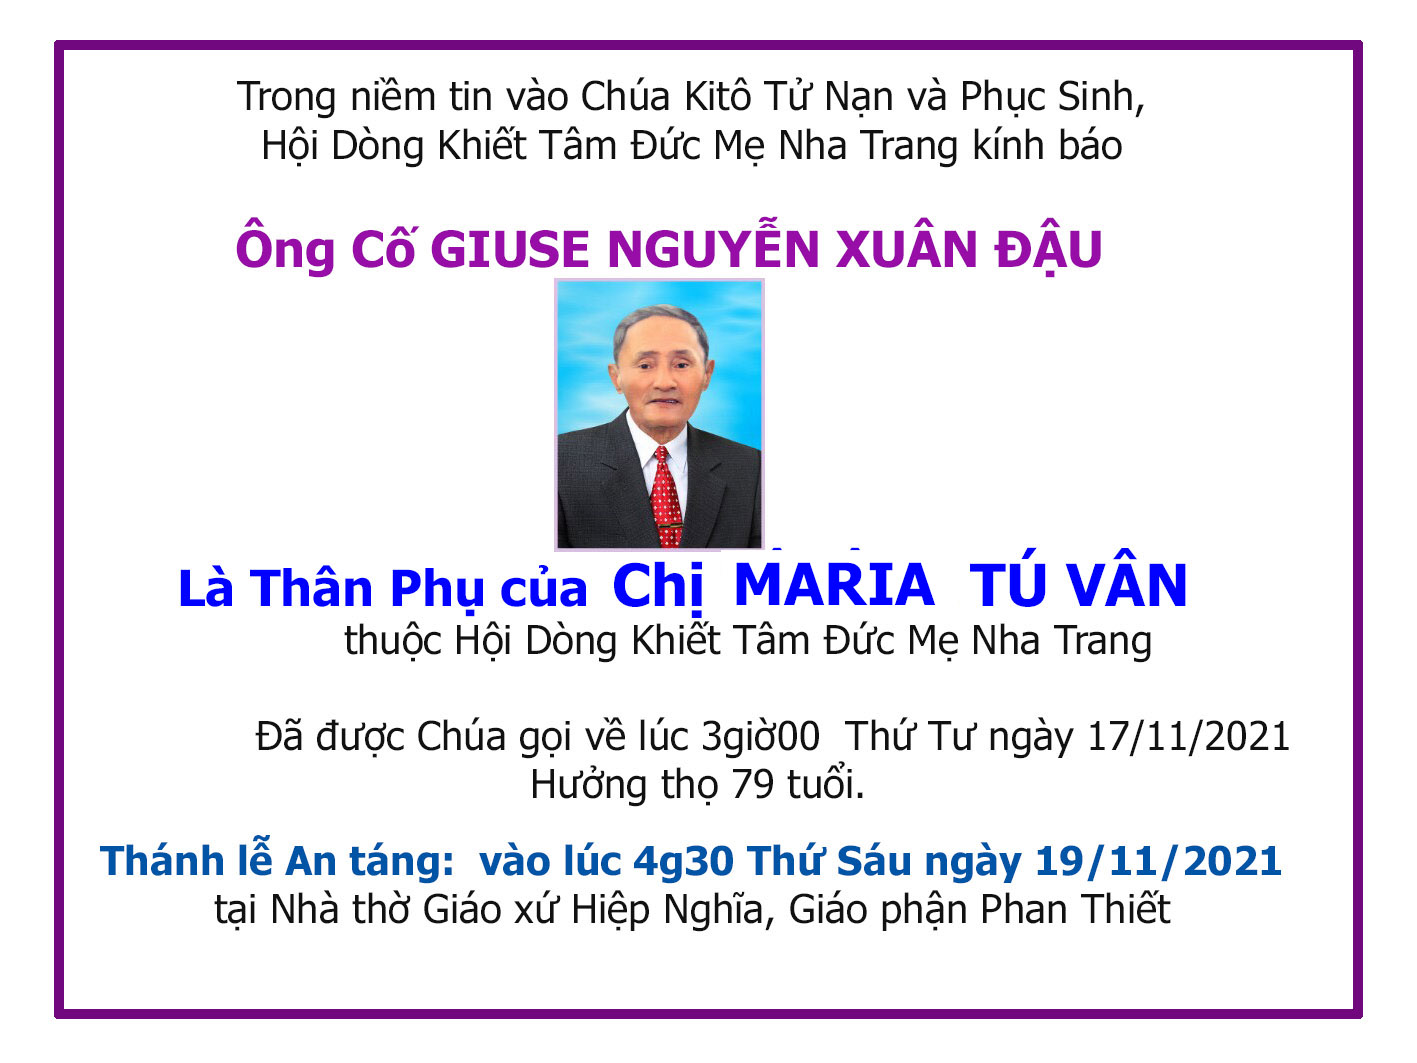 Ai tín: Thân Phụ của chị Maria Tú Vân vừa được Chúa gọi về